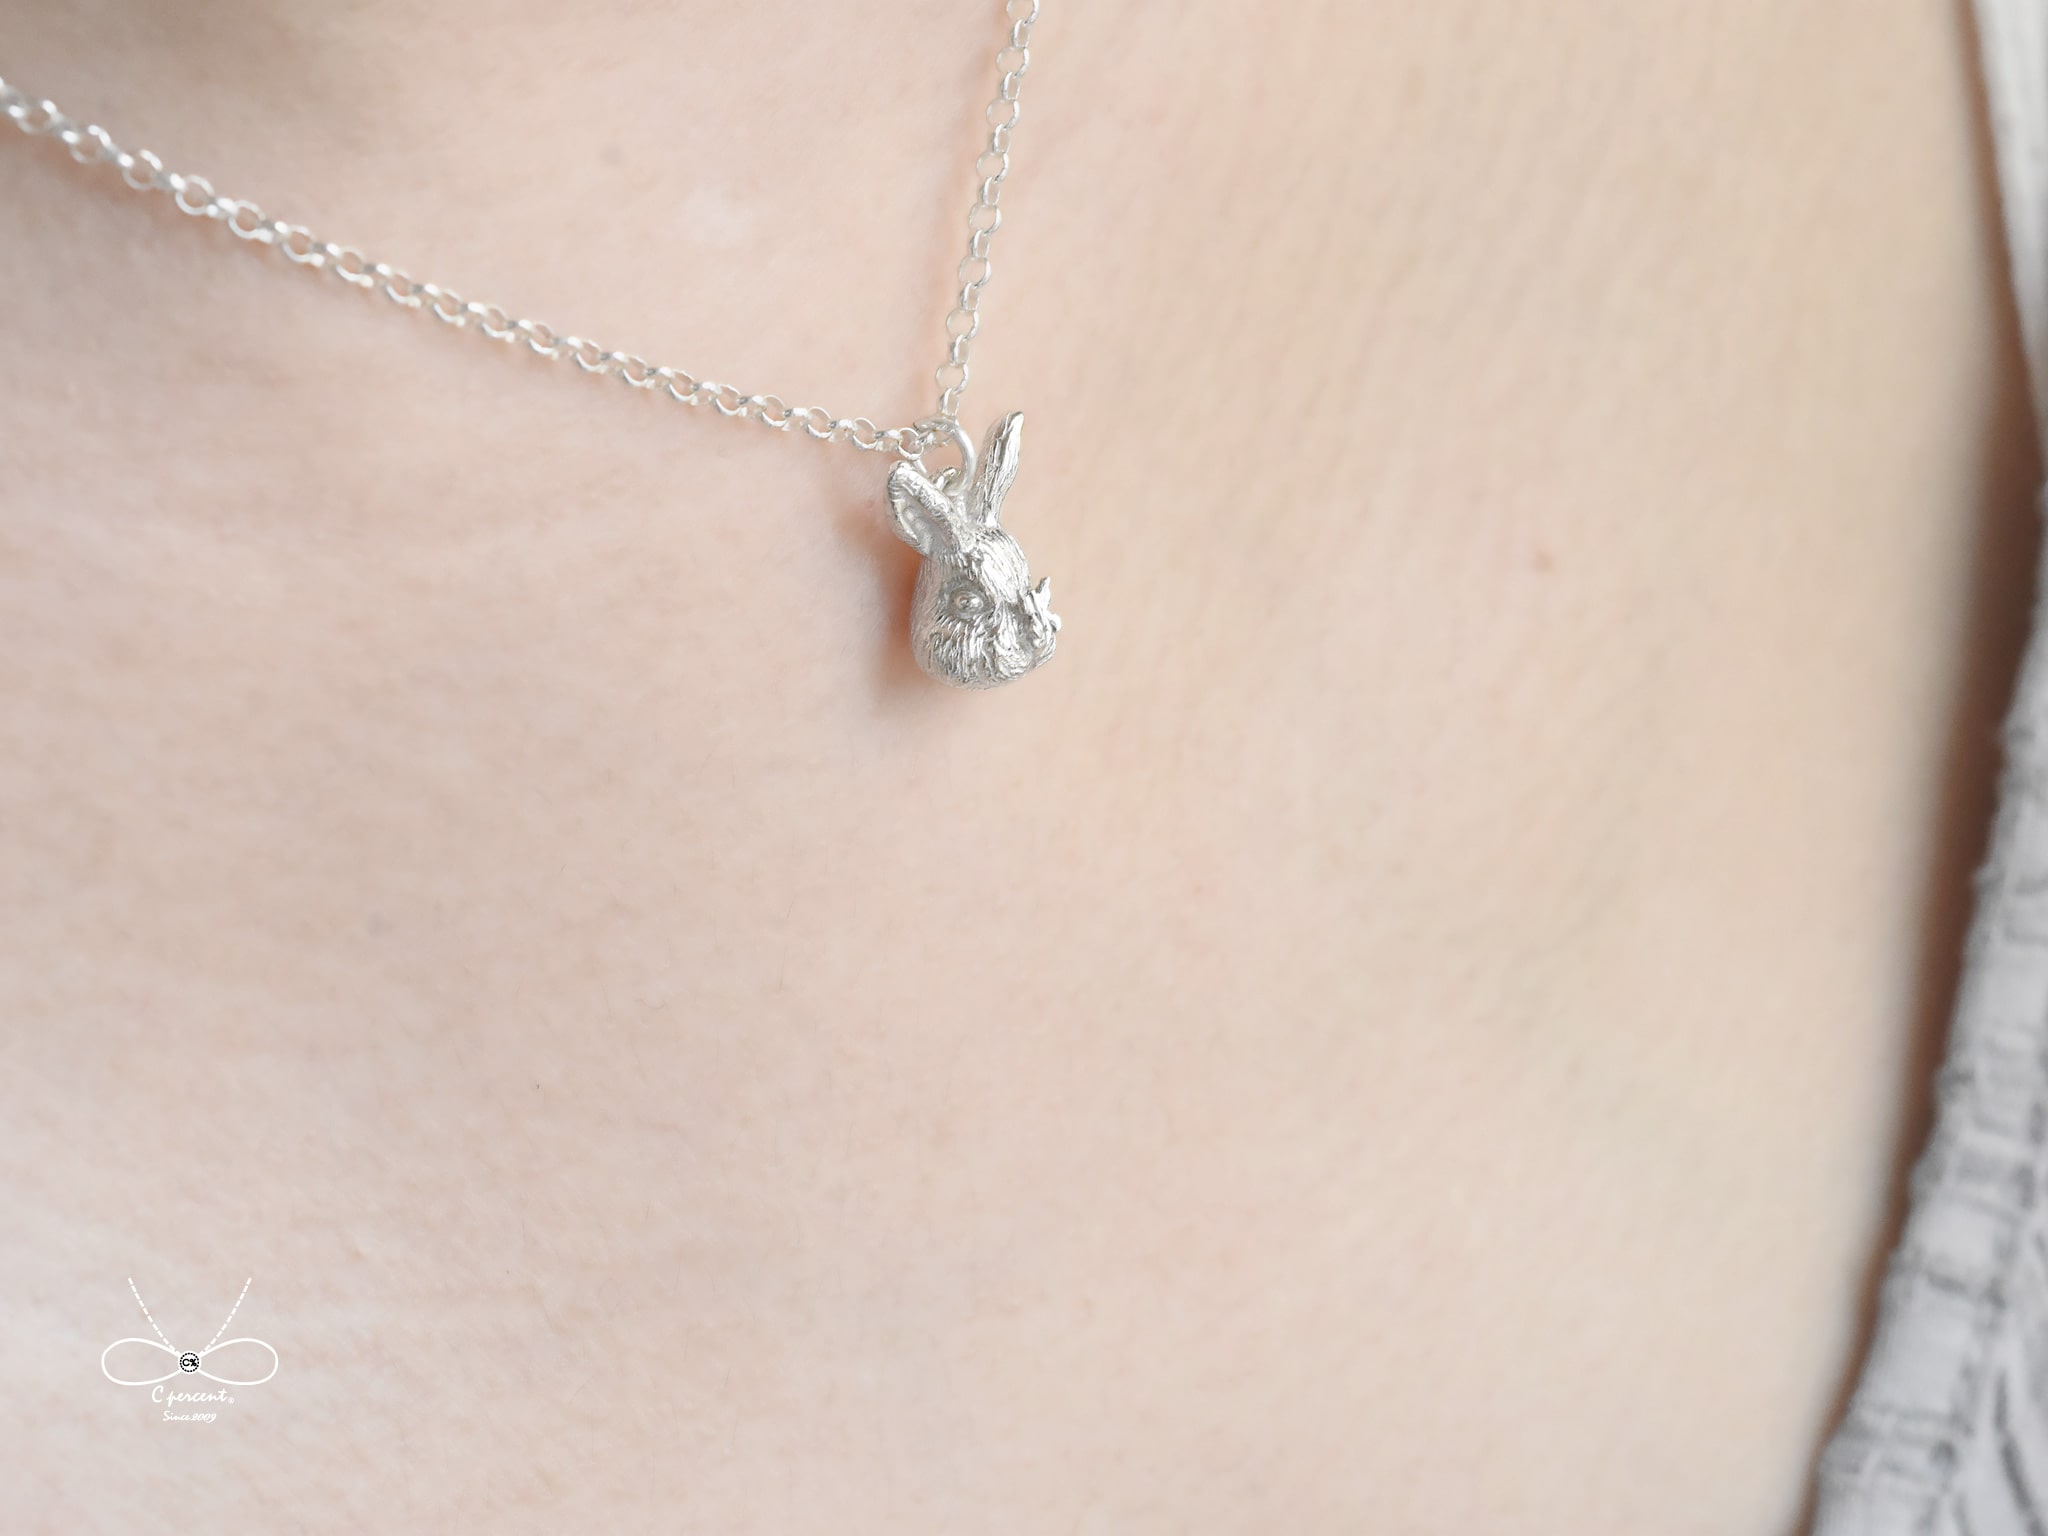 兔子遇上蝴蝶 | 純銀項鍊 細項鍊 森林系 立體動物 手工銀飾 - 飾品圖片第1張